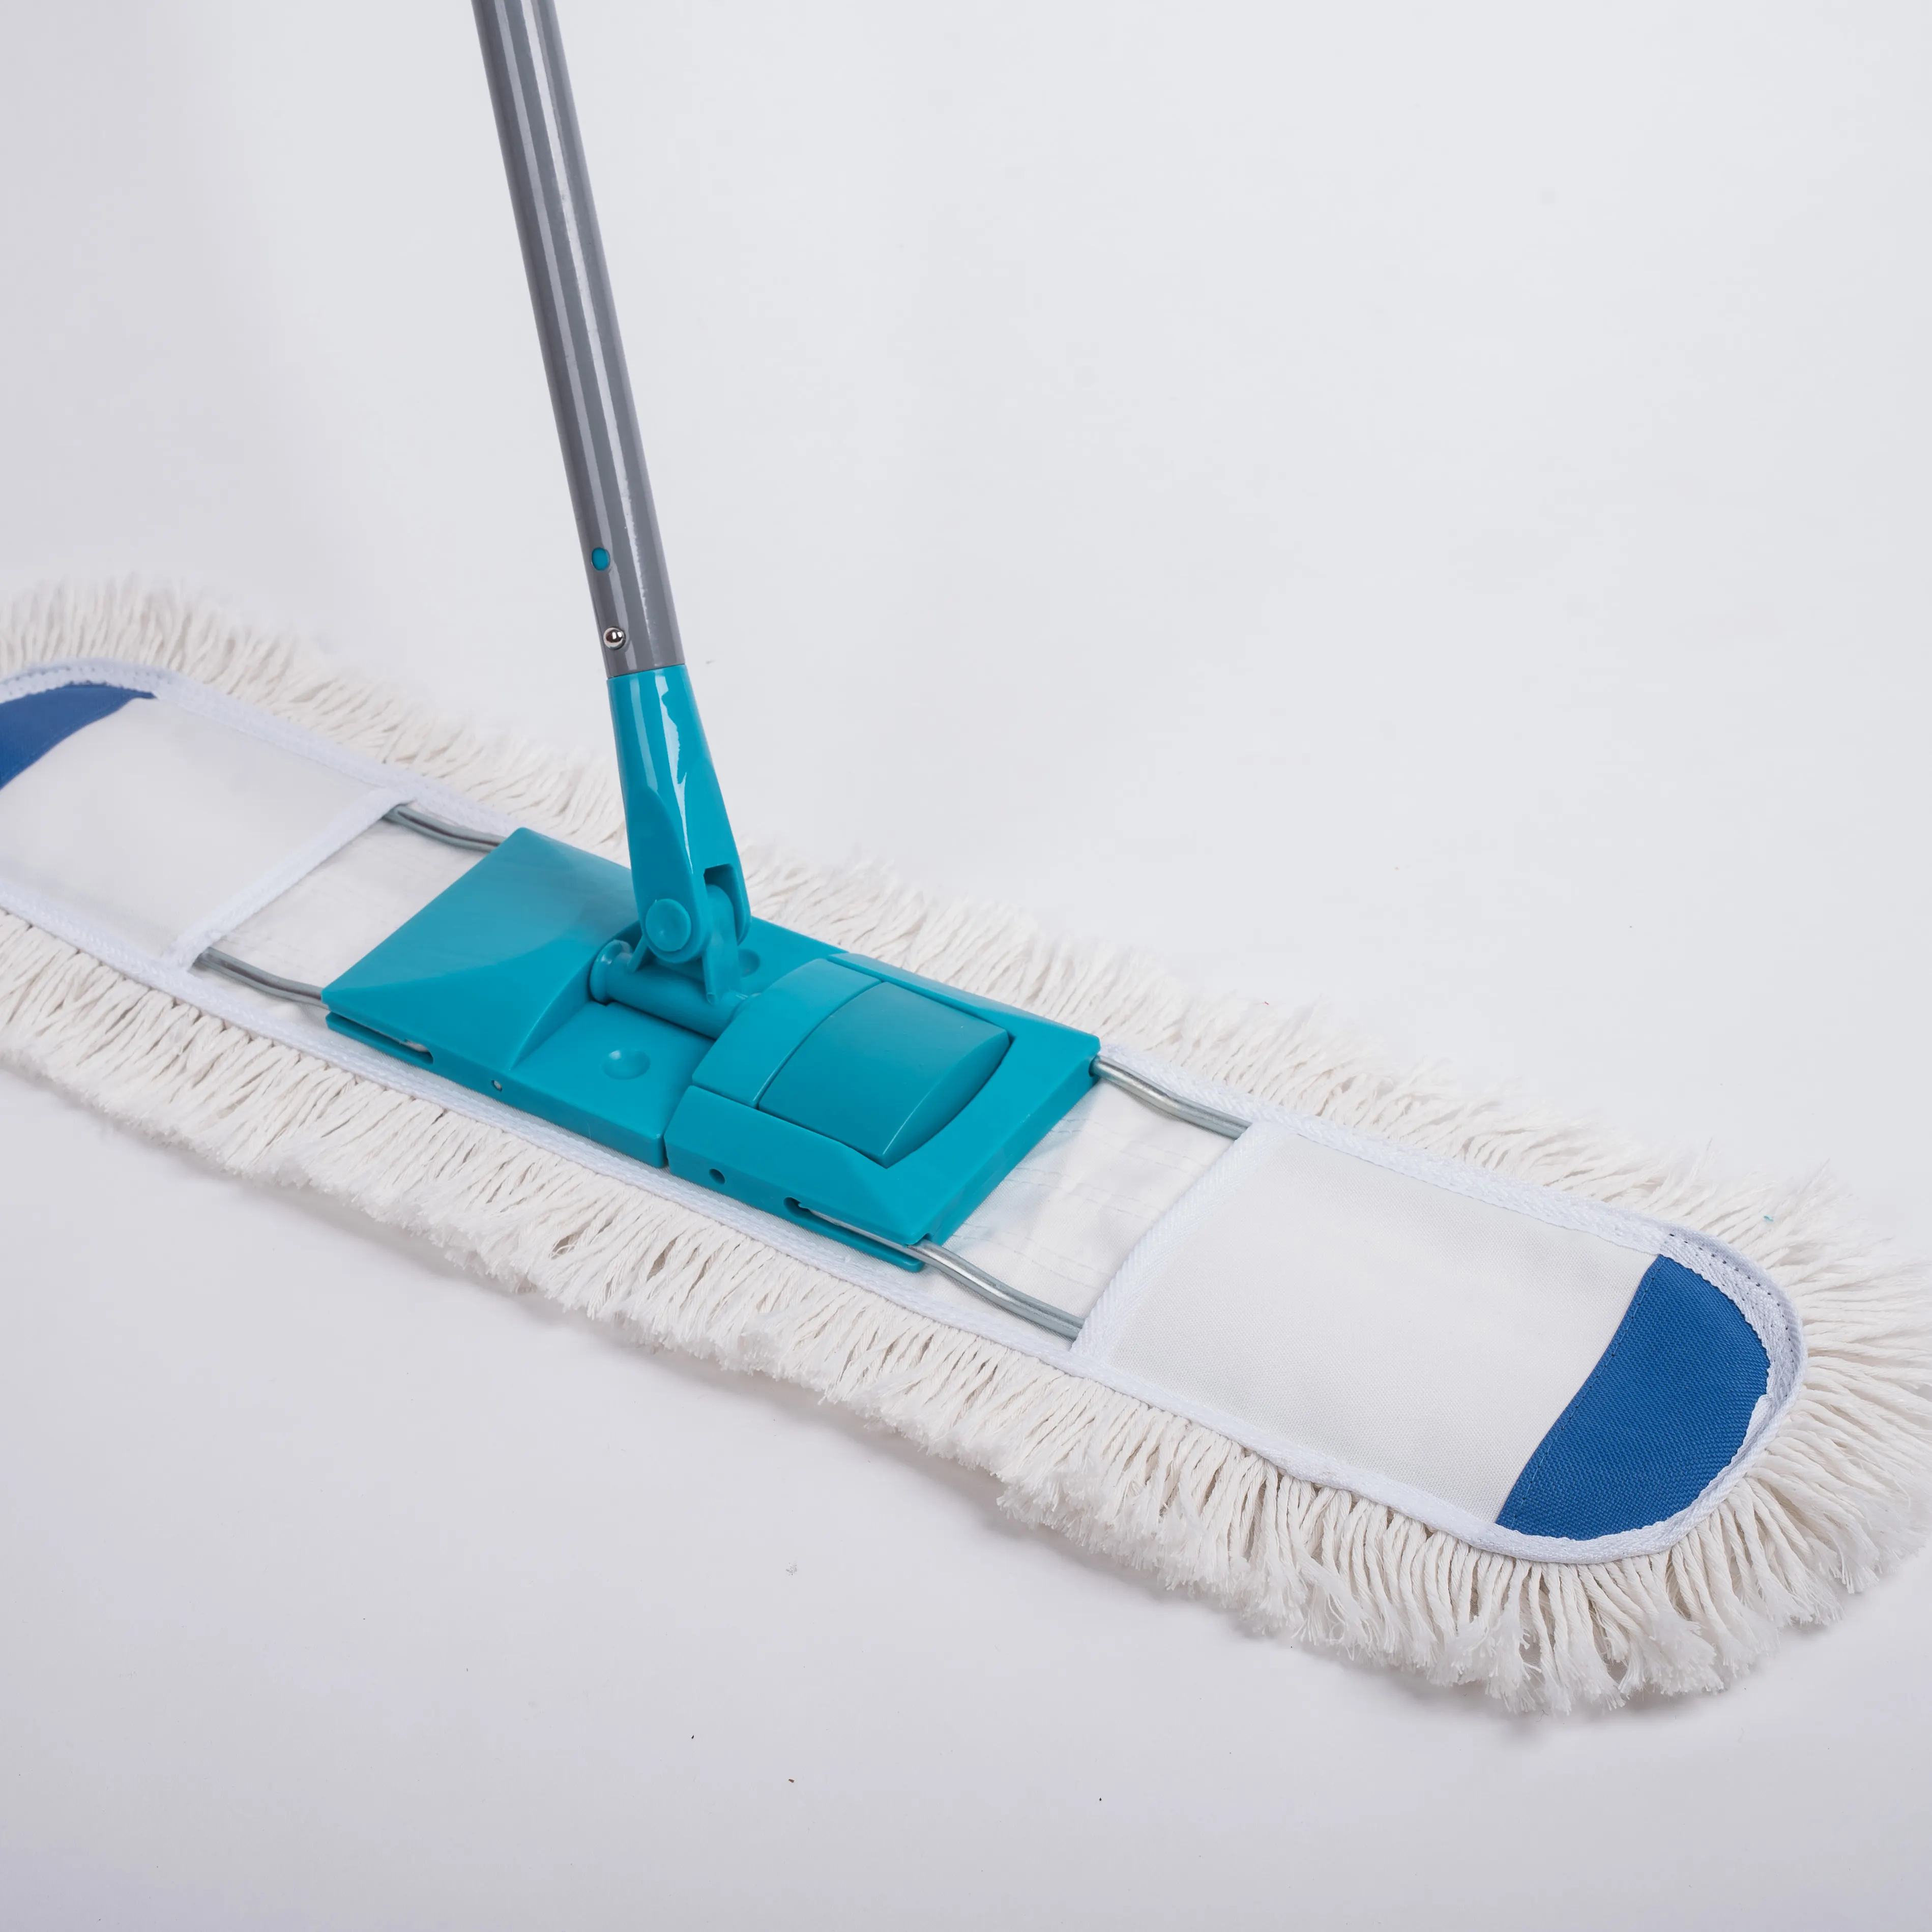 Sistema di mocio commerciale in stile Euro Mop industriale professionale in cotone dal Design unico Mop professionale per la pulizia dei pavimenti